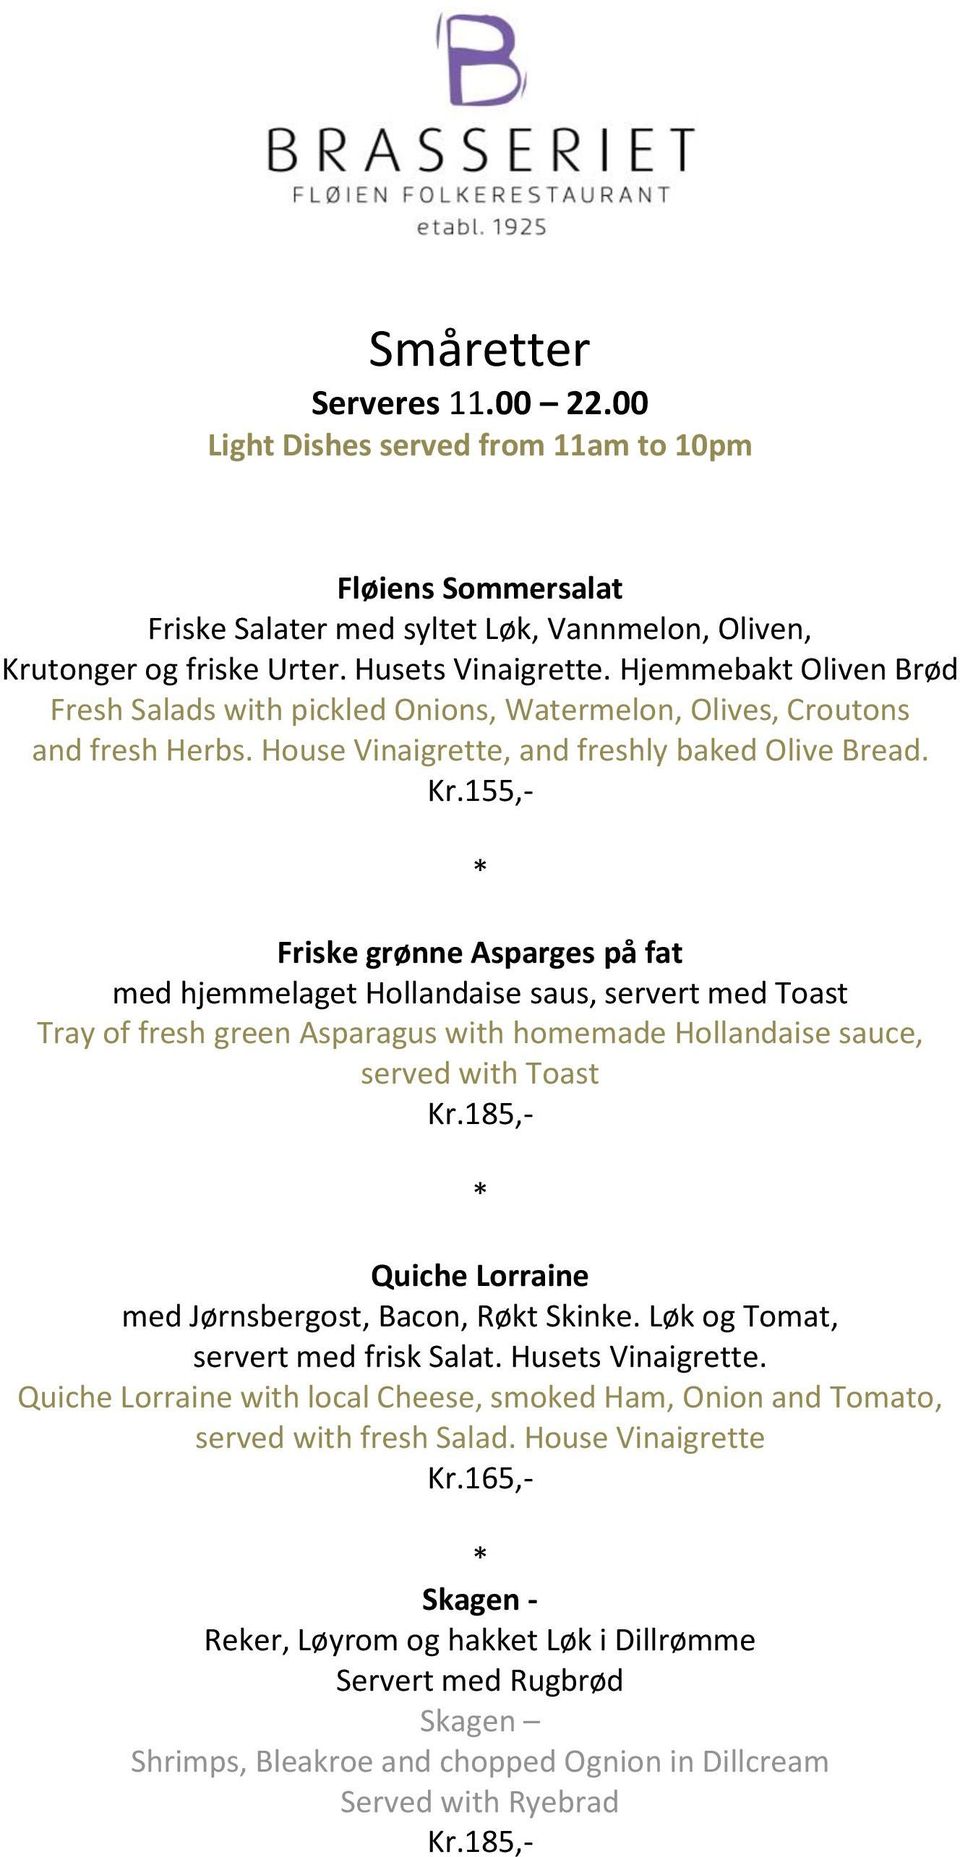 155,- Friske grønne Asparges på fat med hjemmelaget Hollandaise saus, servert med Toast Tray of fresh green Asparagus with homemade Hollandaise sauce, served with Toast Kr.